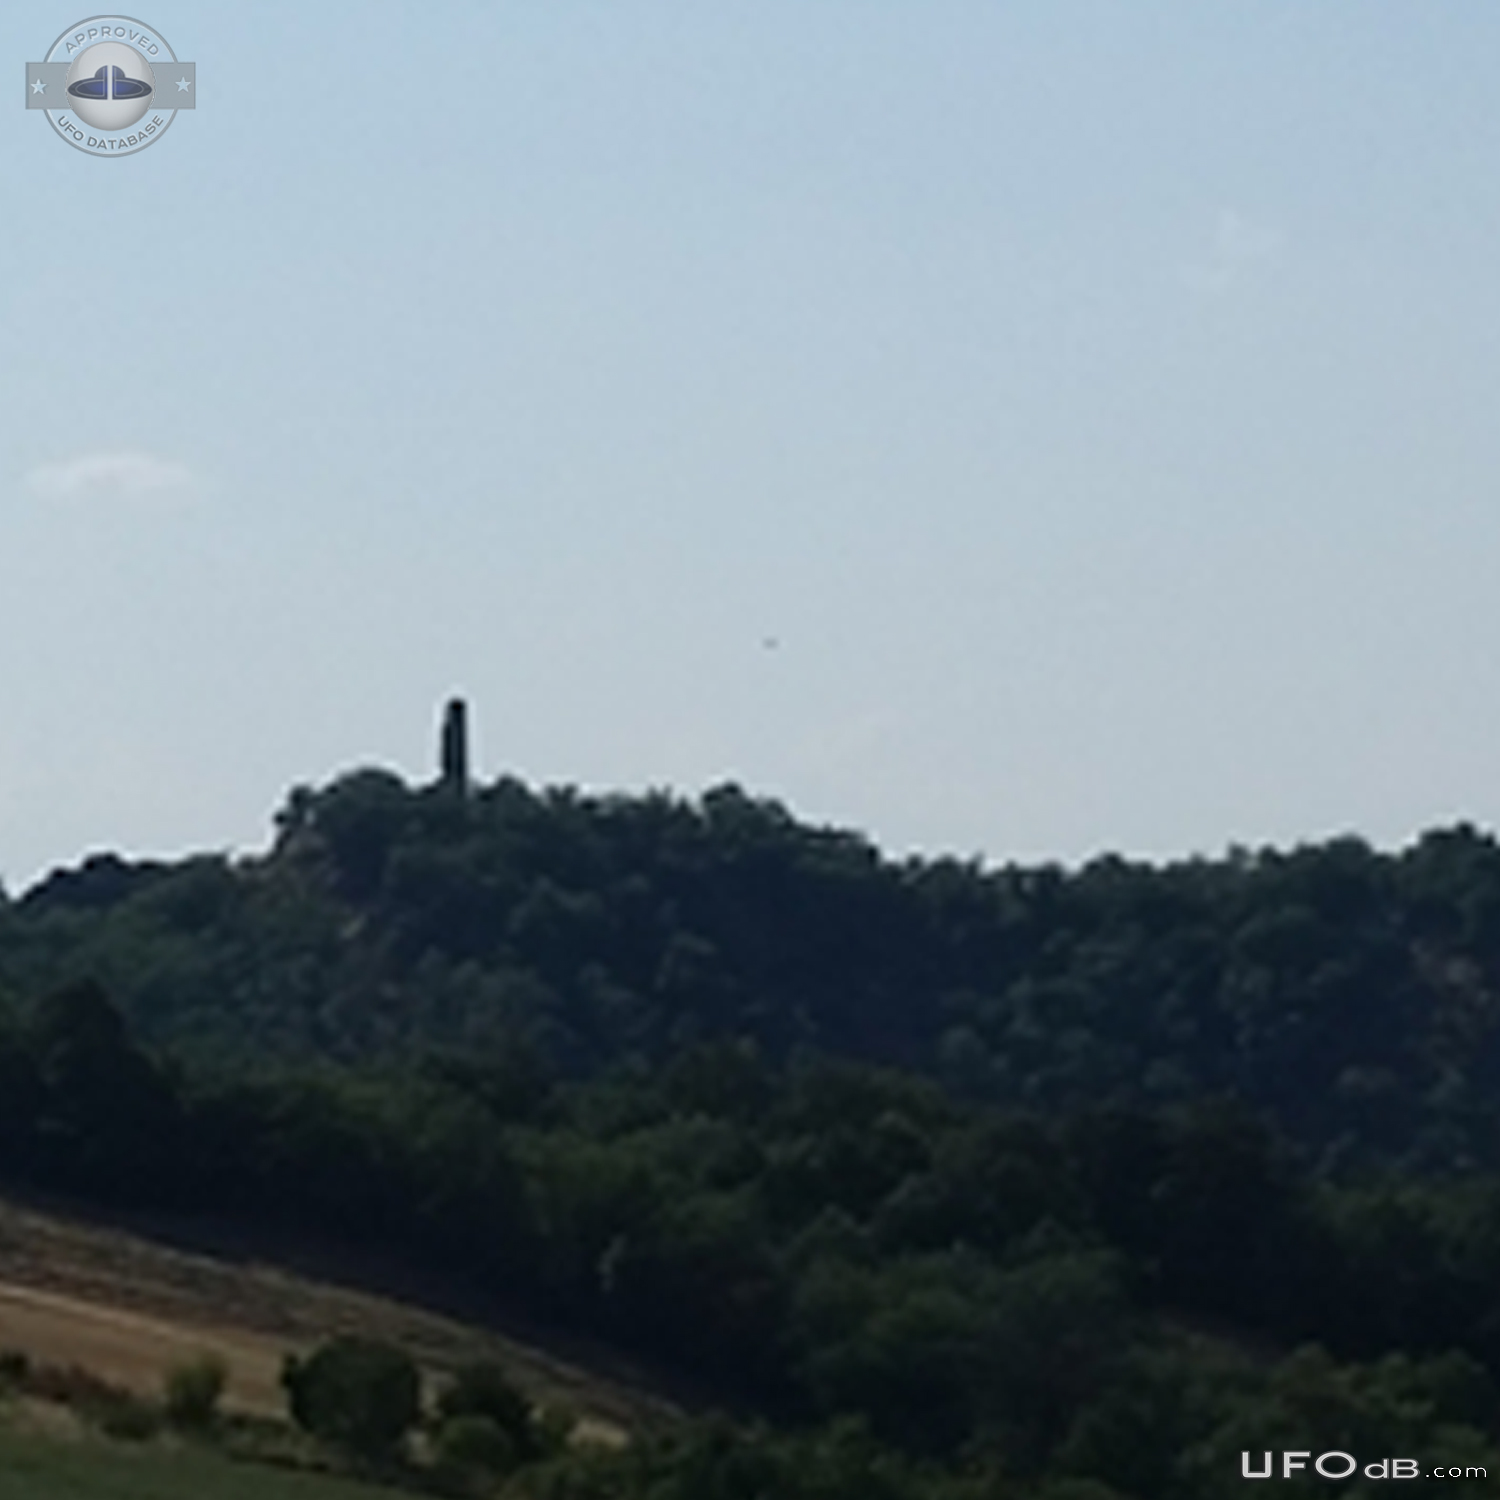 Black spherical UFO  near Tower Pellegrino Parmense Emilia-Romagna Ita UFO Picture #761-4